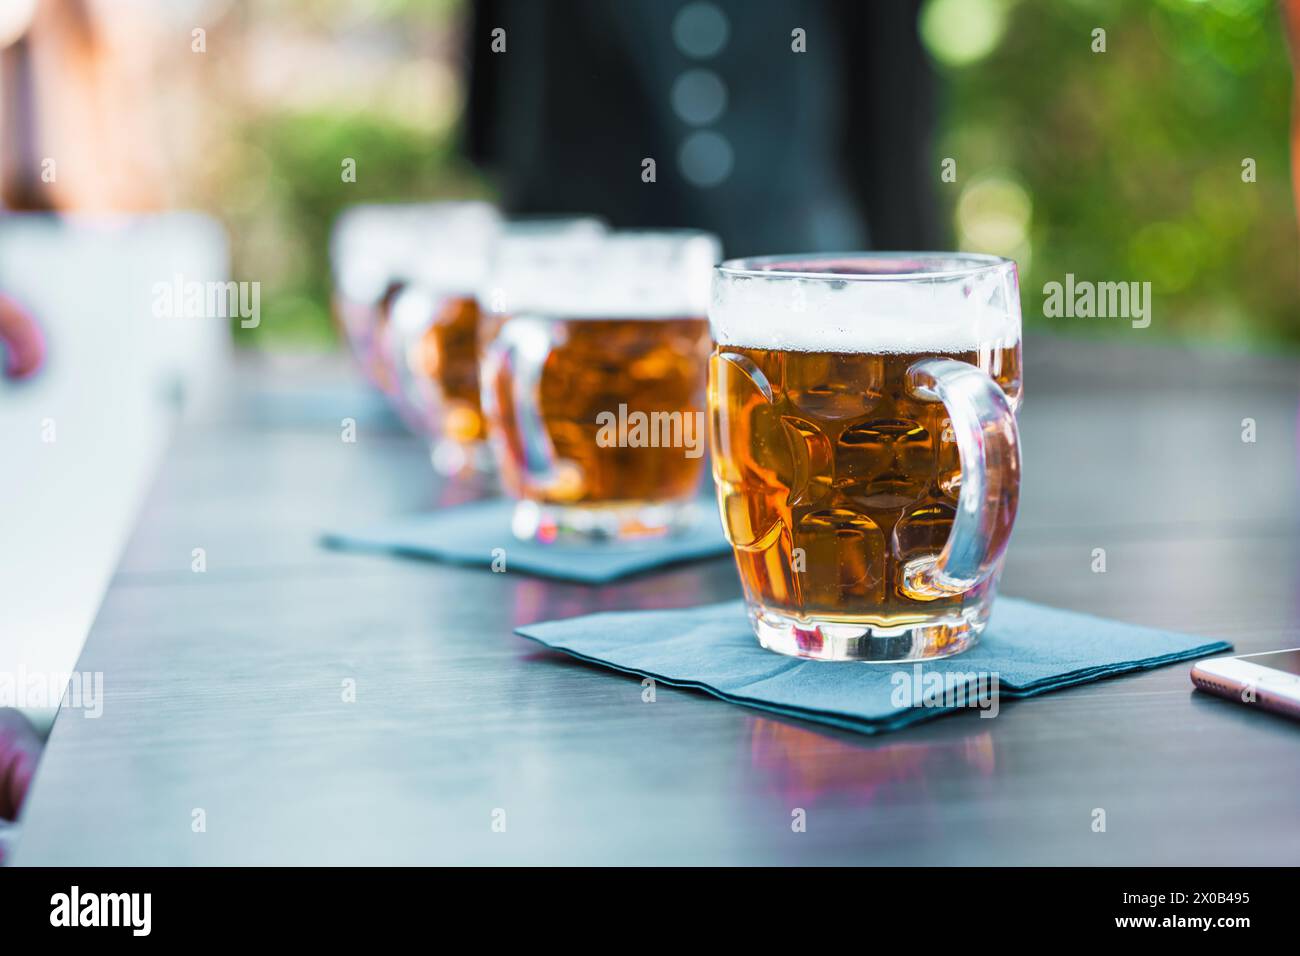 Reihe von Biergläsern auf einem Tisch im Freien - Biergeschmack erfrischende Momente unter freiem Himmel, die das Wesen der sozialen Freizeit einfangen. Stockfoto